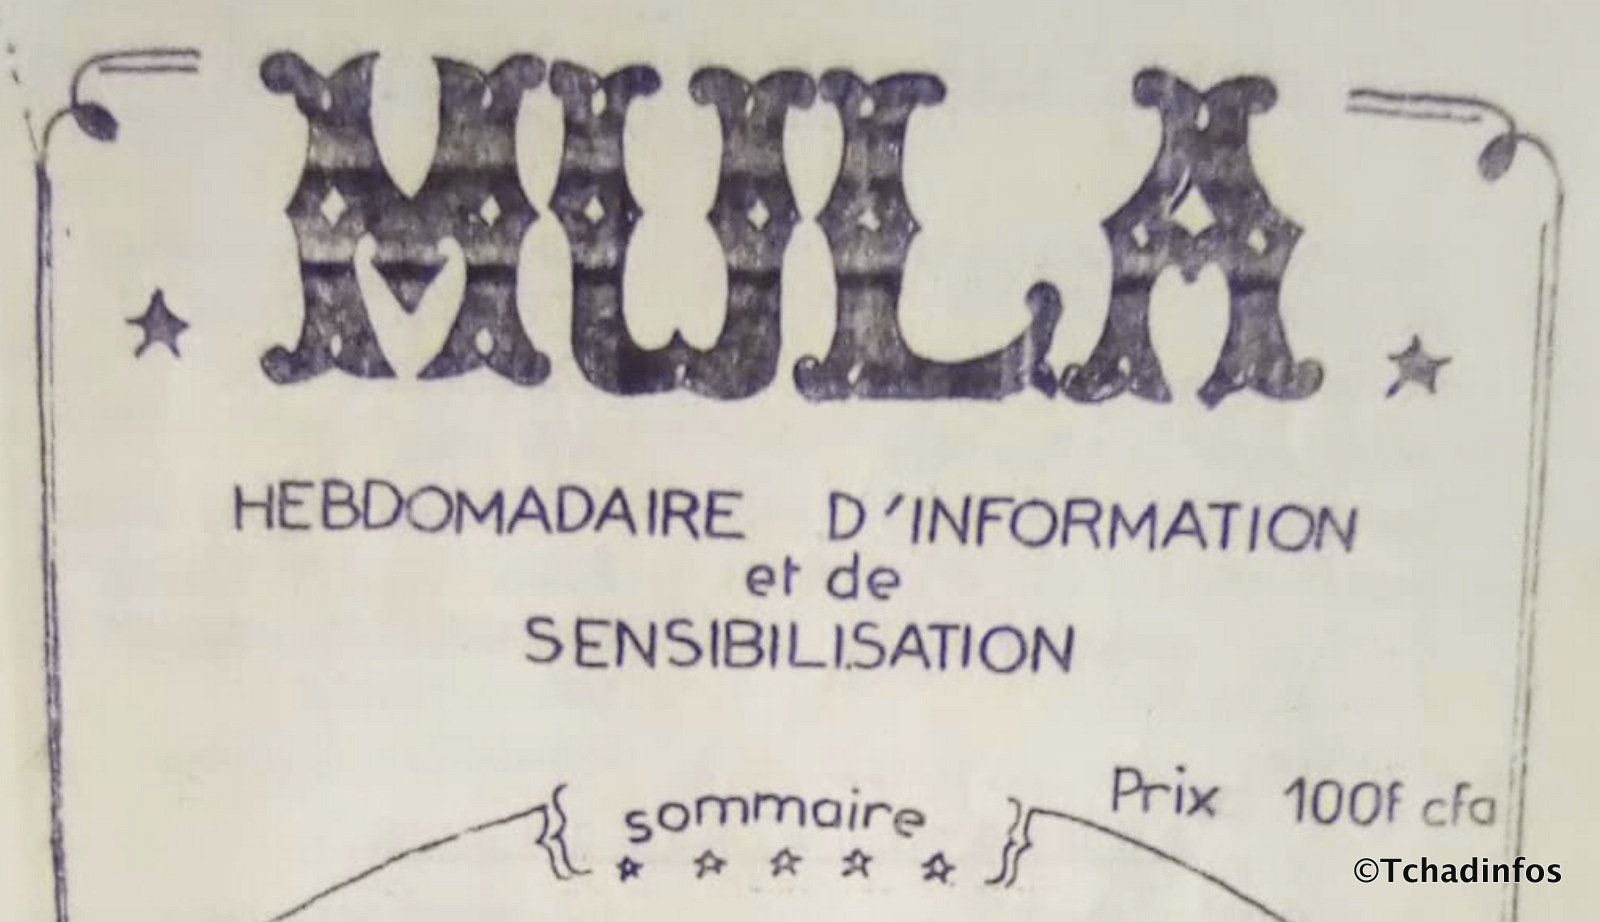 Histoire : Dans le sillage du Comité permanent est lancé Mula, journal de combat et de sensibilisation